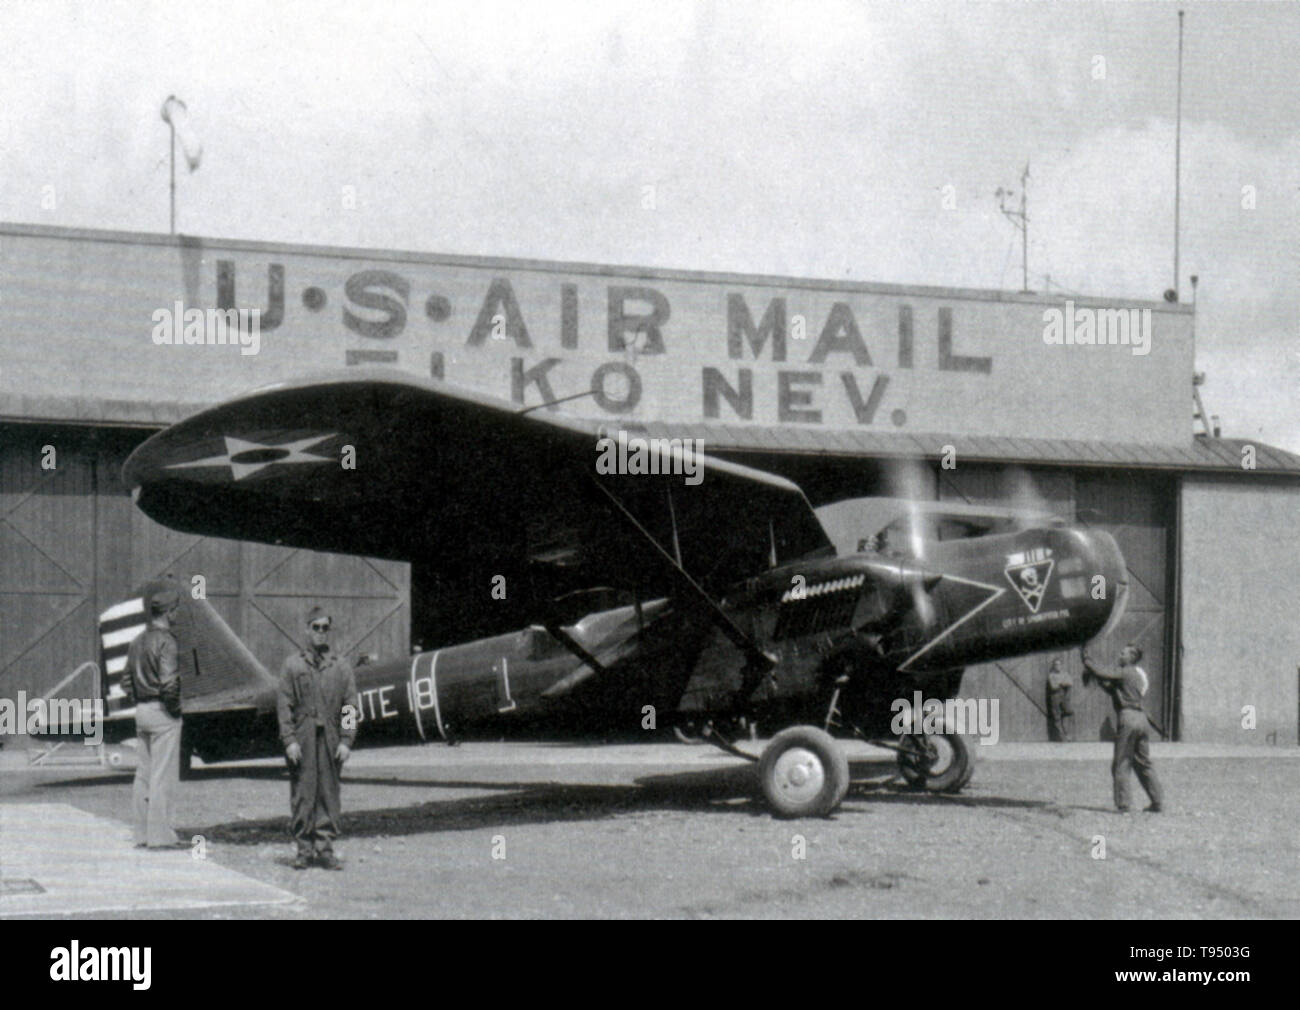 En febrero de 1934, el Presidente Roosevelt canceló todos los contratos de correo aéreo debido a un escándalo relativo a la adjudicación de contratos, iniciándose así el envío aéreo de emergencia, donde el Cuerpo Aéreo era el encargado de llevar el correo hasta nuevos contratos podrían ser adjudicados. Foto de stock